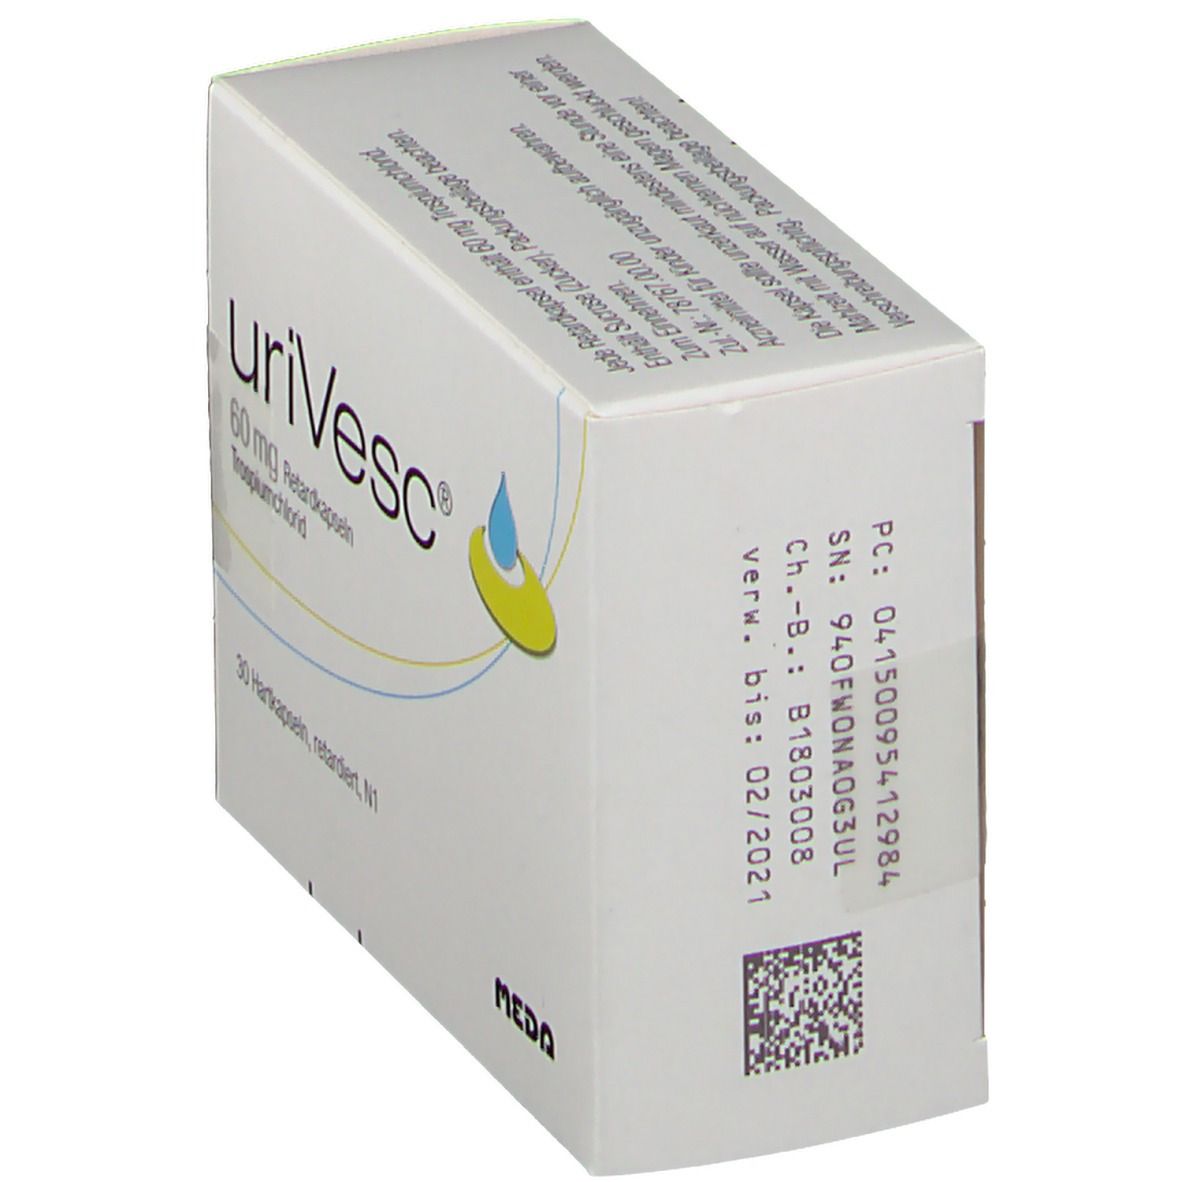 uriVesc® 60 mg